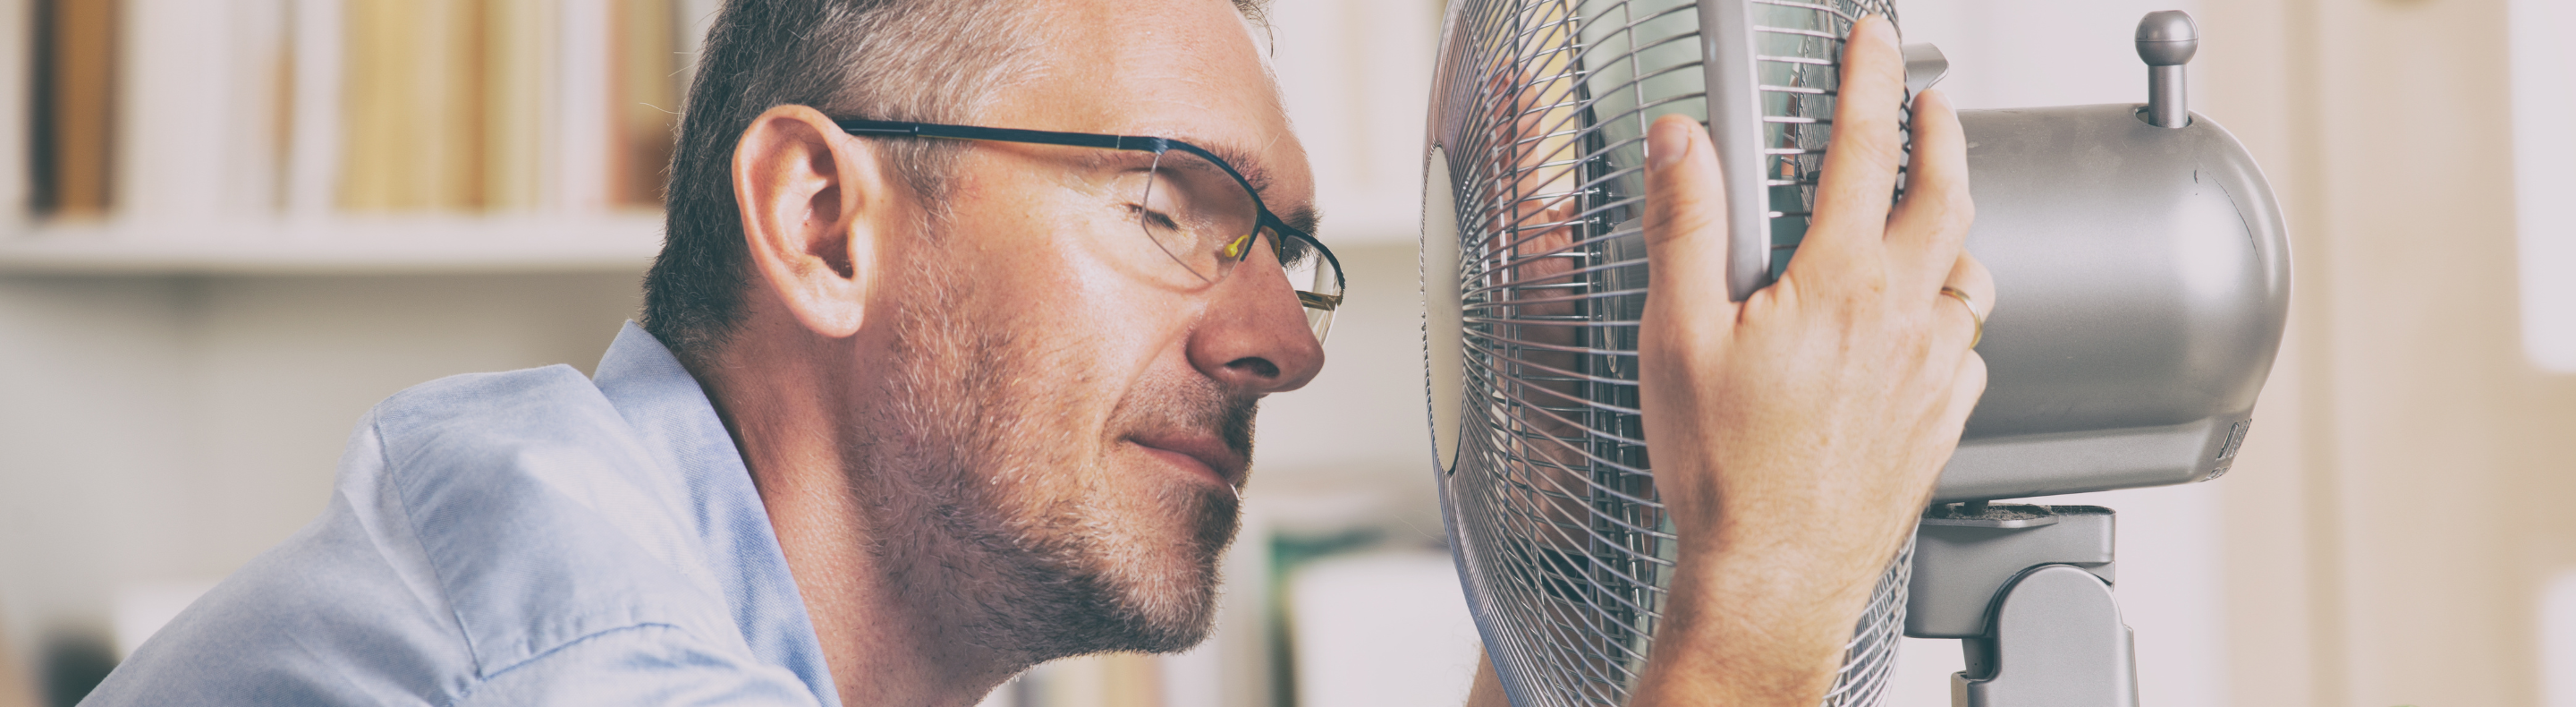 Imagem mostra homem se refrescando do calor em frente a um ventilador